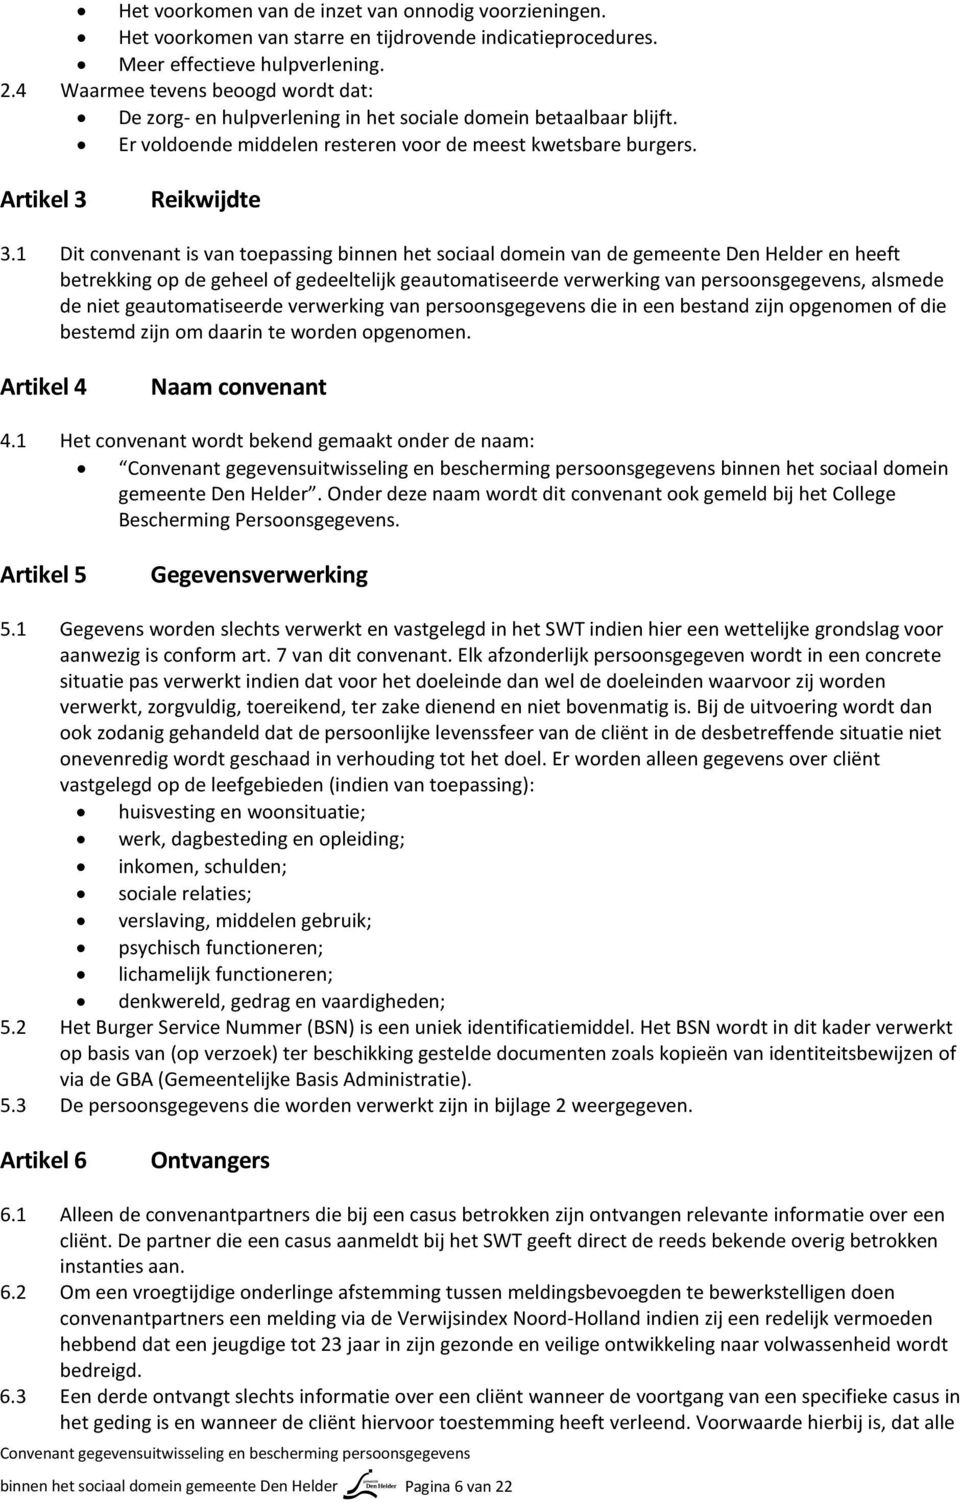 1 Dit convenant is van toepassing binnen het sociaal domein van de gemeente Den Helder en heeft betrekking op de geheel of gedeeltelijk geautomatiseerde verwerking van persoonsgegevens, alsmede de